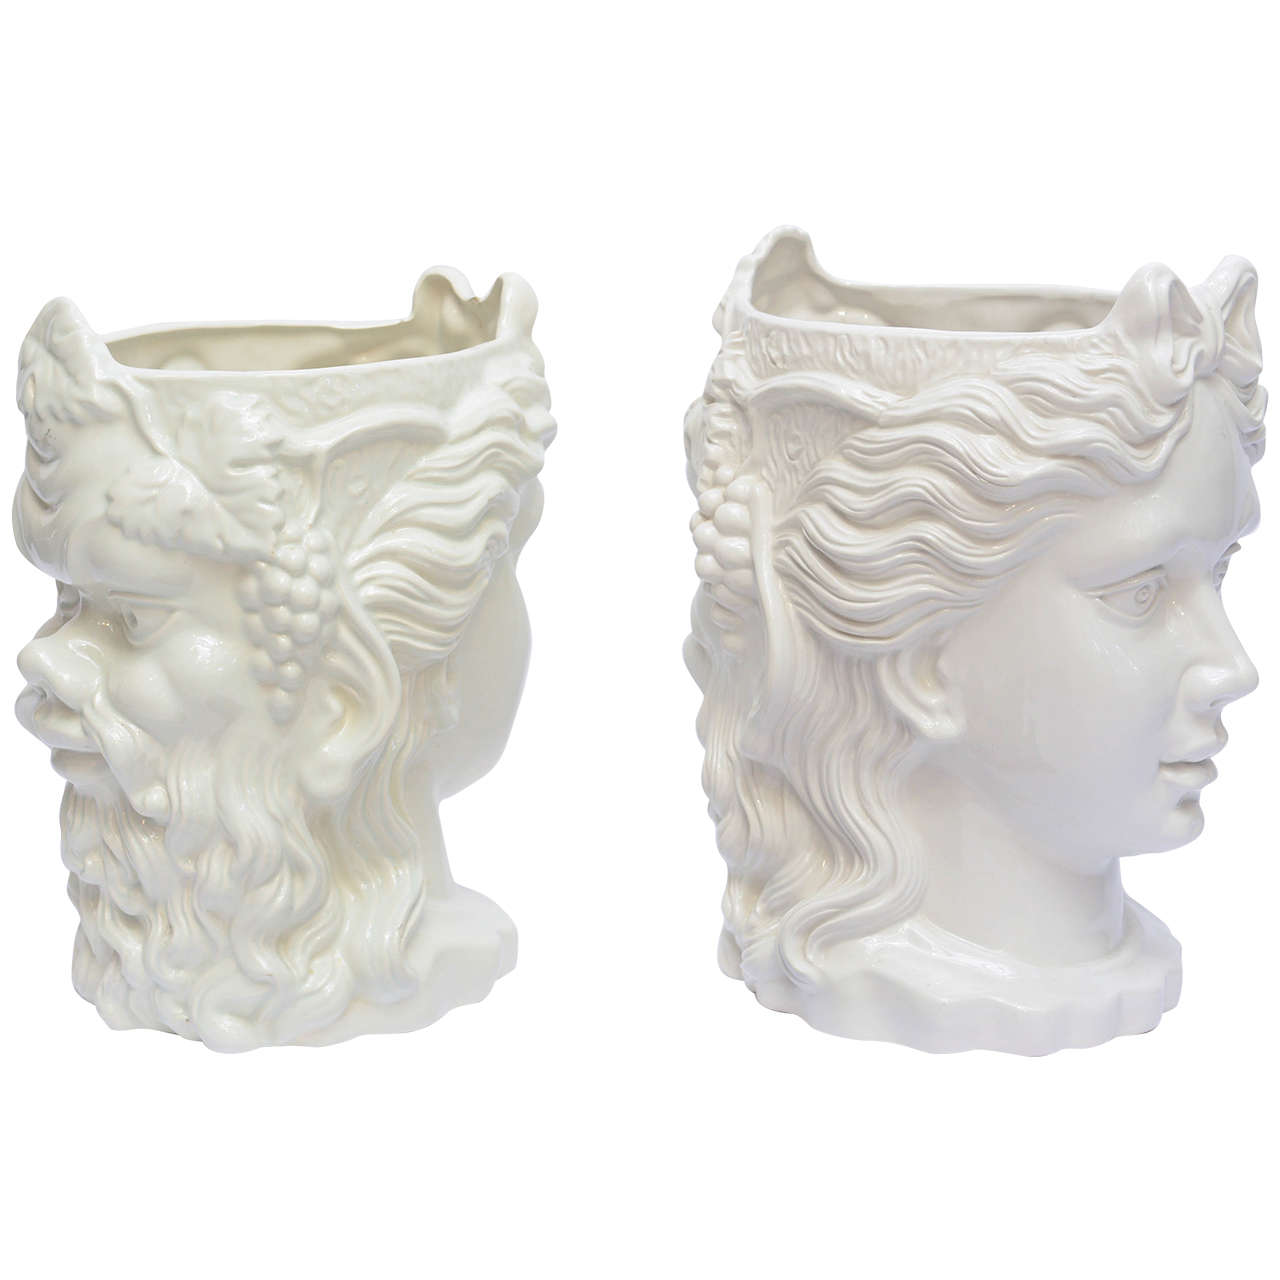 Pair of Italian White Ceramic Two Face Planters c1950's